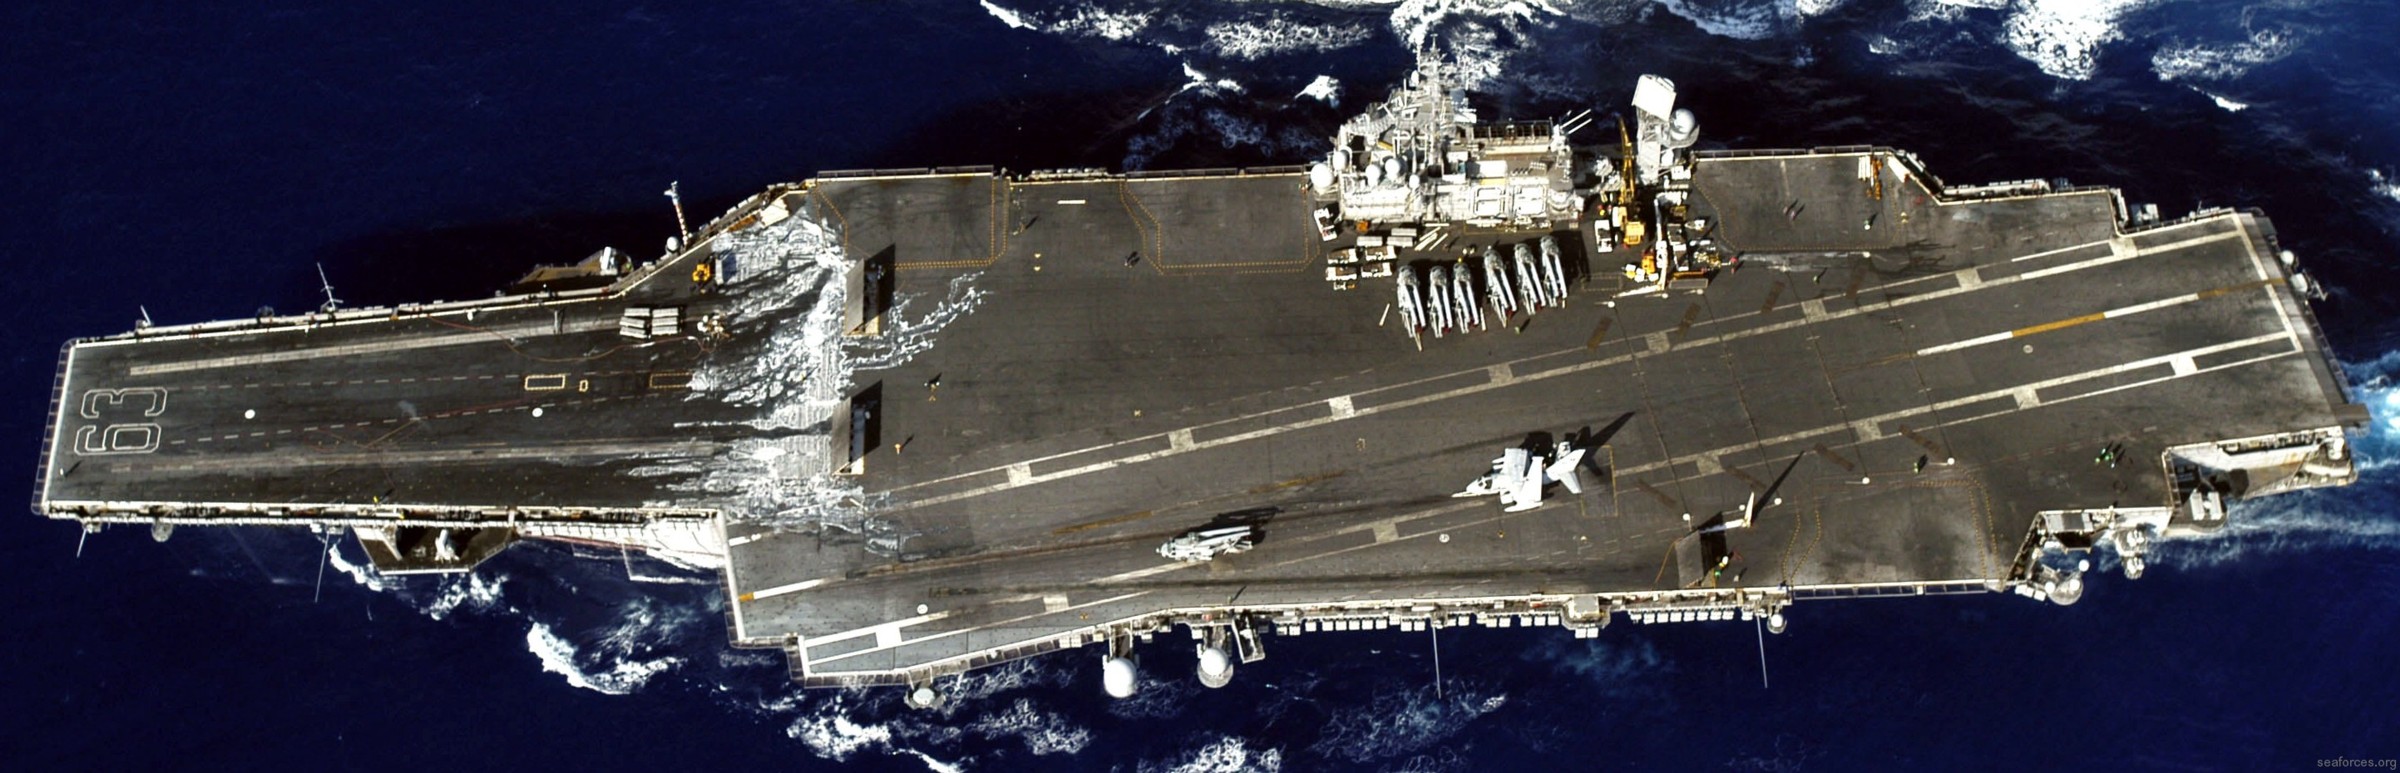 cv-63 uss kitty hawk aircraft carrier pacific ocean 180